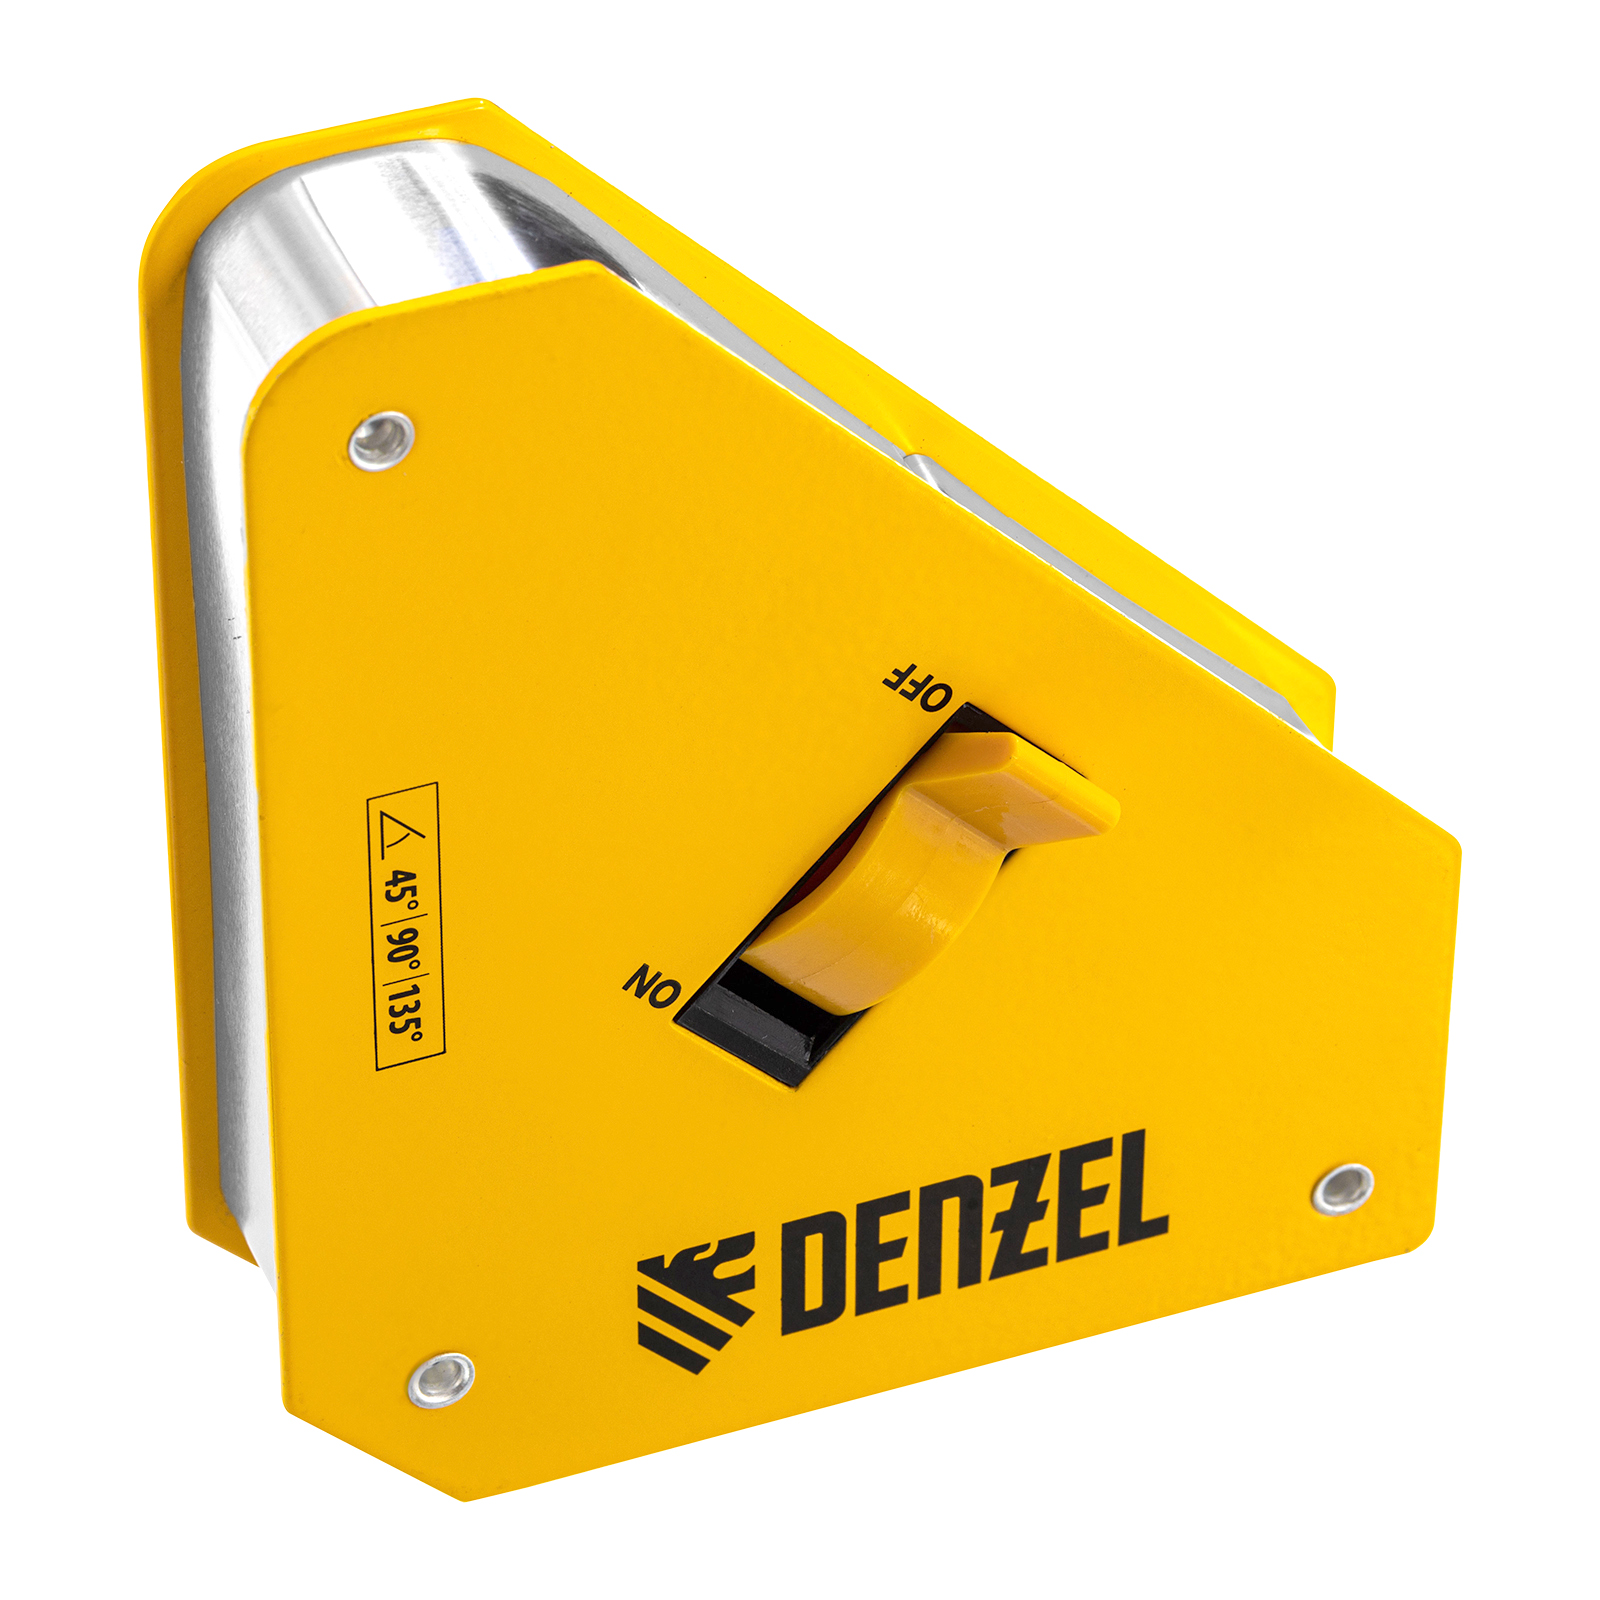 Фиксатор магнитный отключаемый для сварочных работ DENZEL усилие 55 LB, 45х90 град. 97562 фиксатор магнитный регулируемый для сварочных работ denzel усилие 50 lb 97565